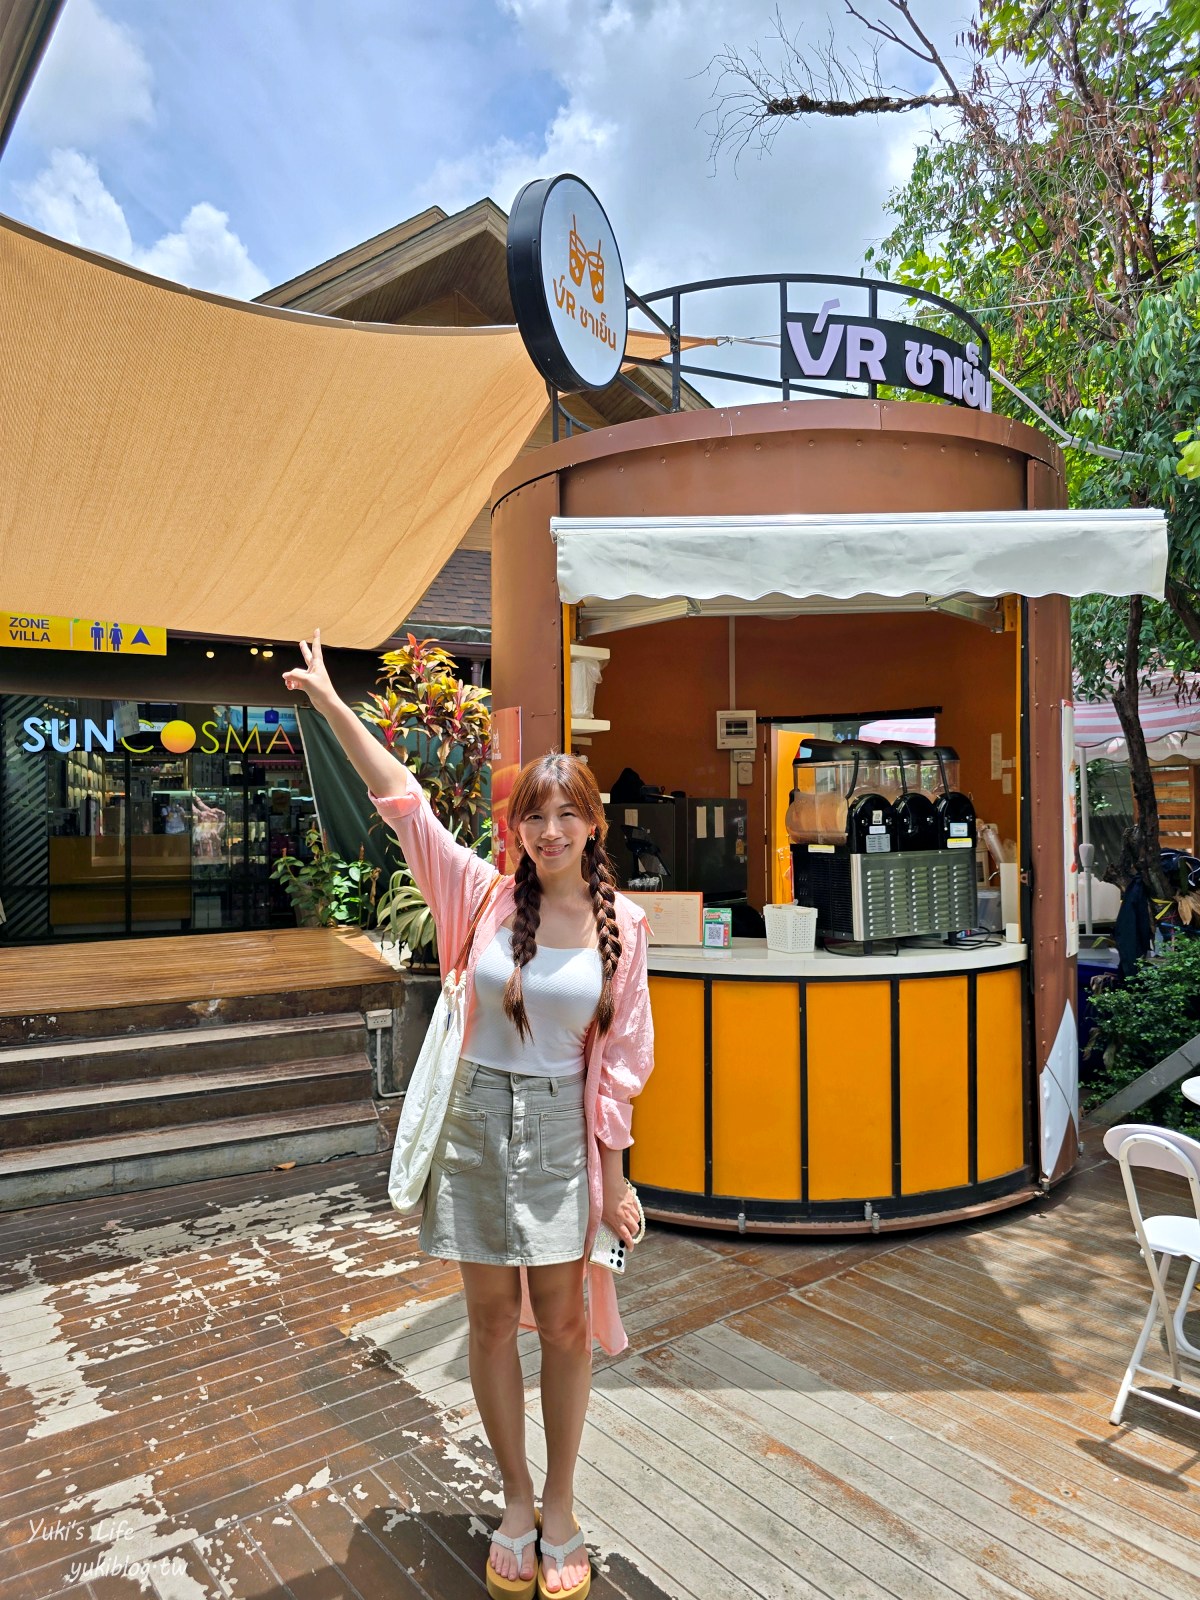 曼谷文青市場【Food Villa Ratchaphruek】觀光客不知道寶藏景點，便宜又好吃！ - yukiblog.tw